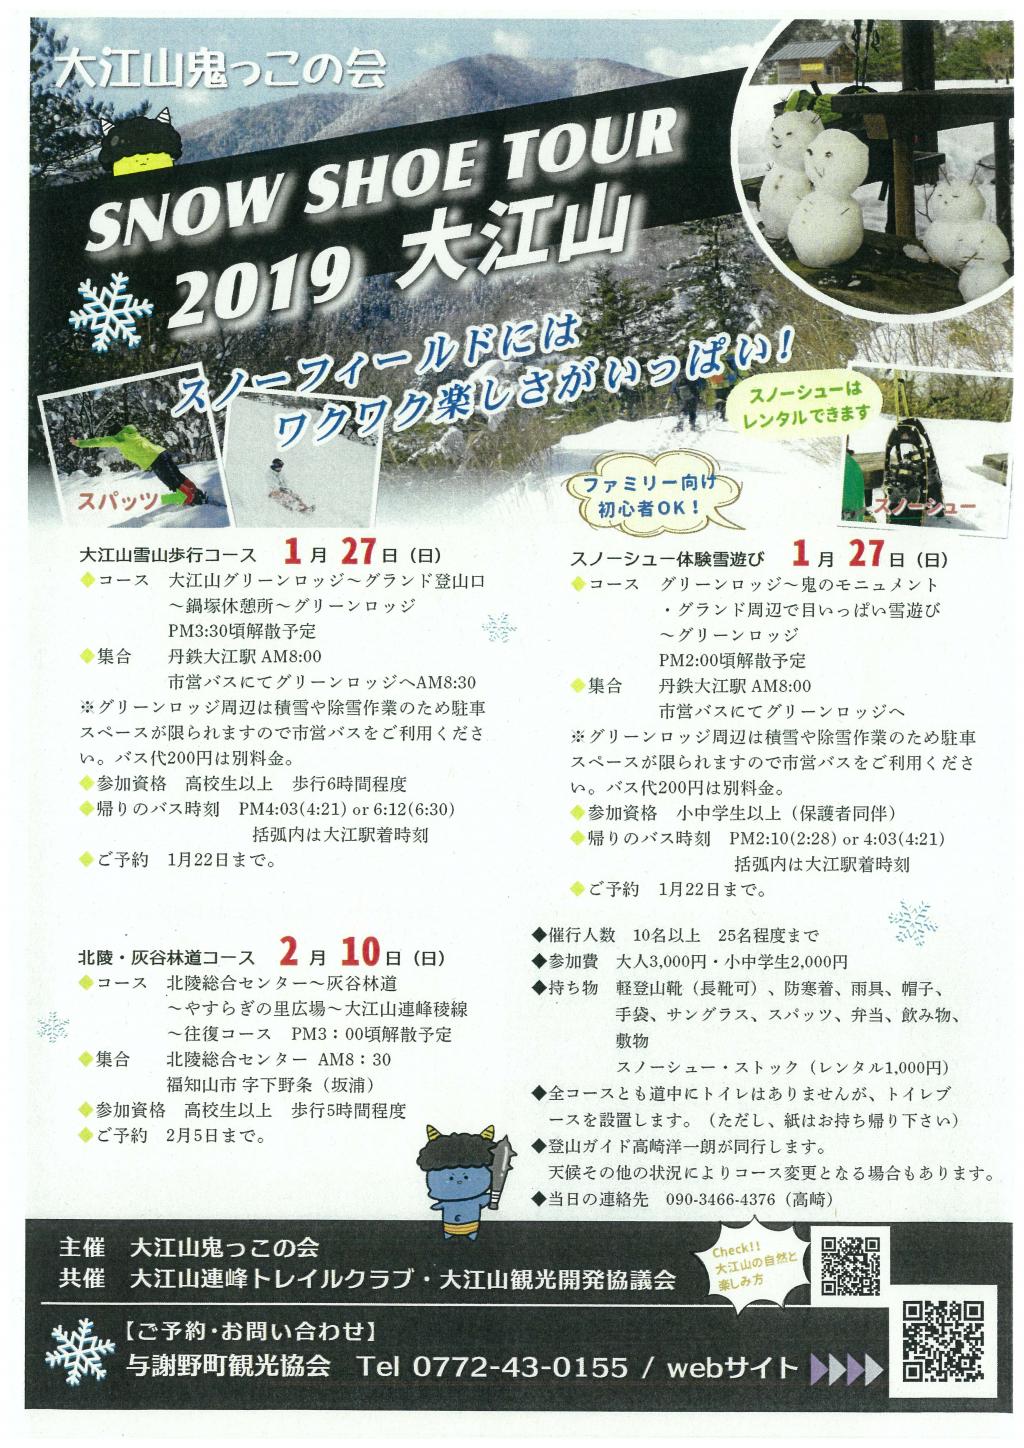 Recruitment of SNOW SHOE TOUR 2019 Mount Oe participants!